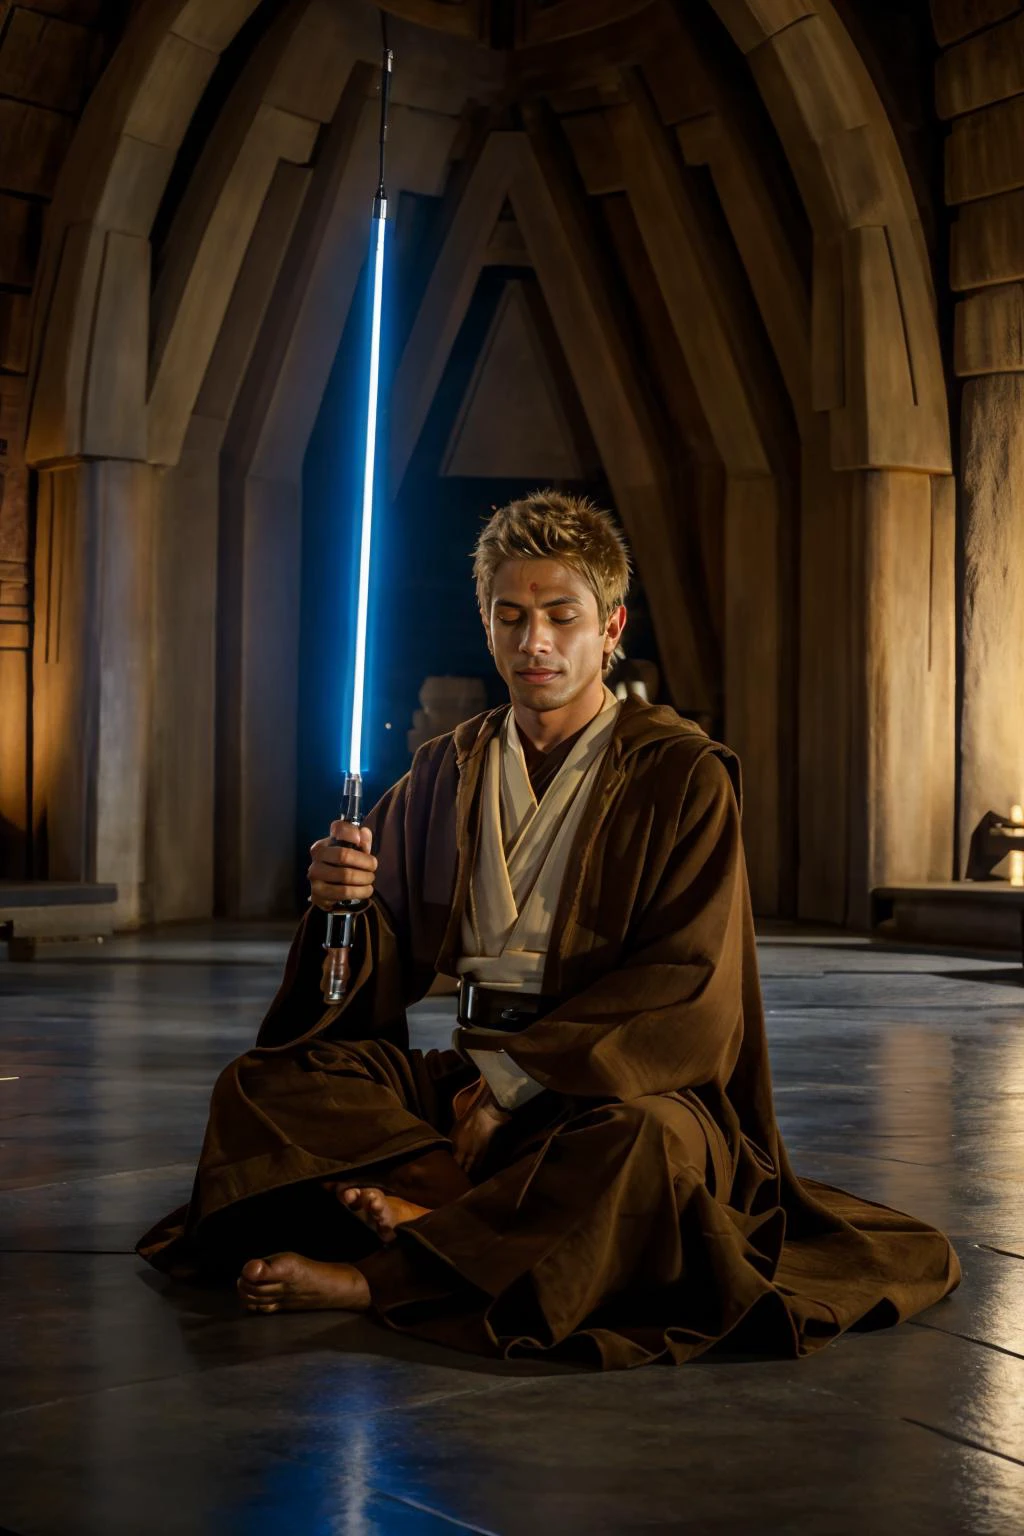 (Jedi-Tempel), (sitzen im indischen Stil:1.5), JackHarrer im Jedi-Outfit, Augen geschlossen, (meditieren), (((Ganzkörperporträt))), (weiter Winkel) 